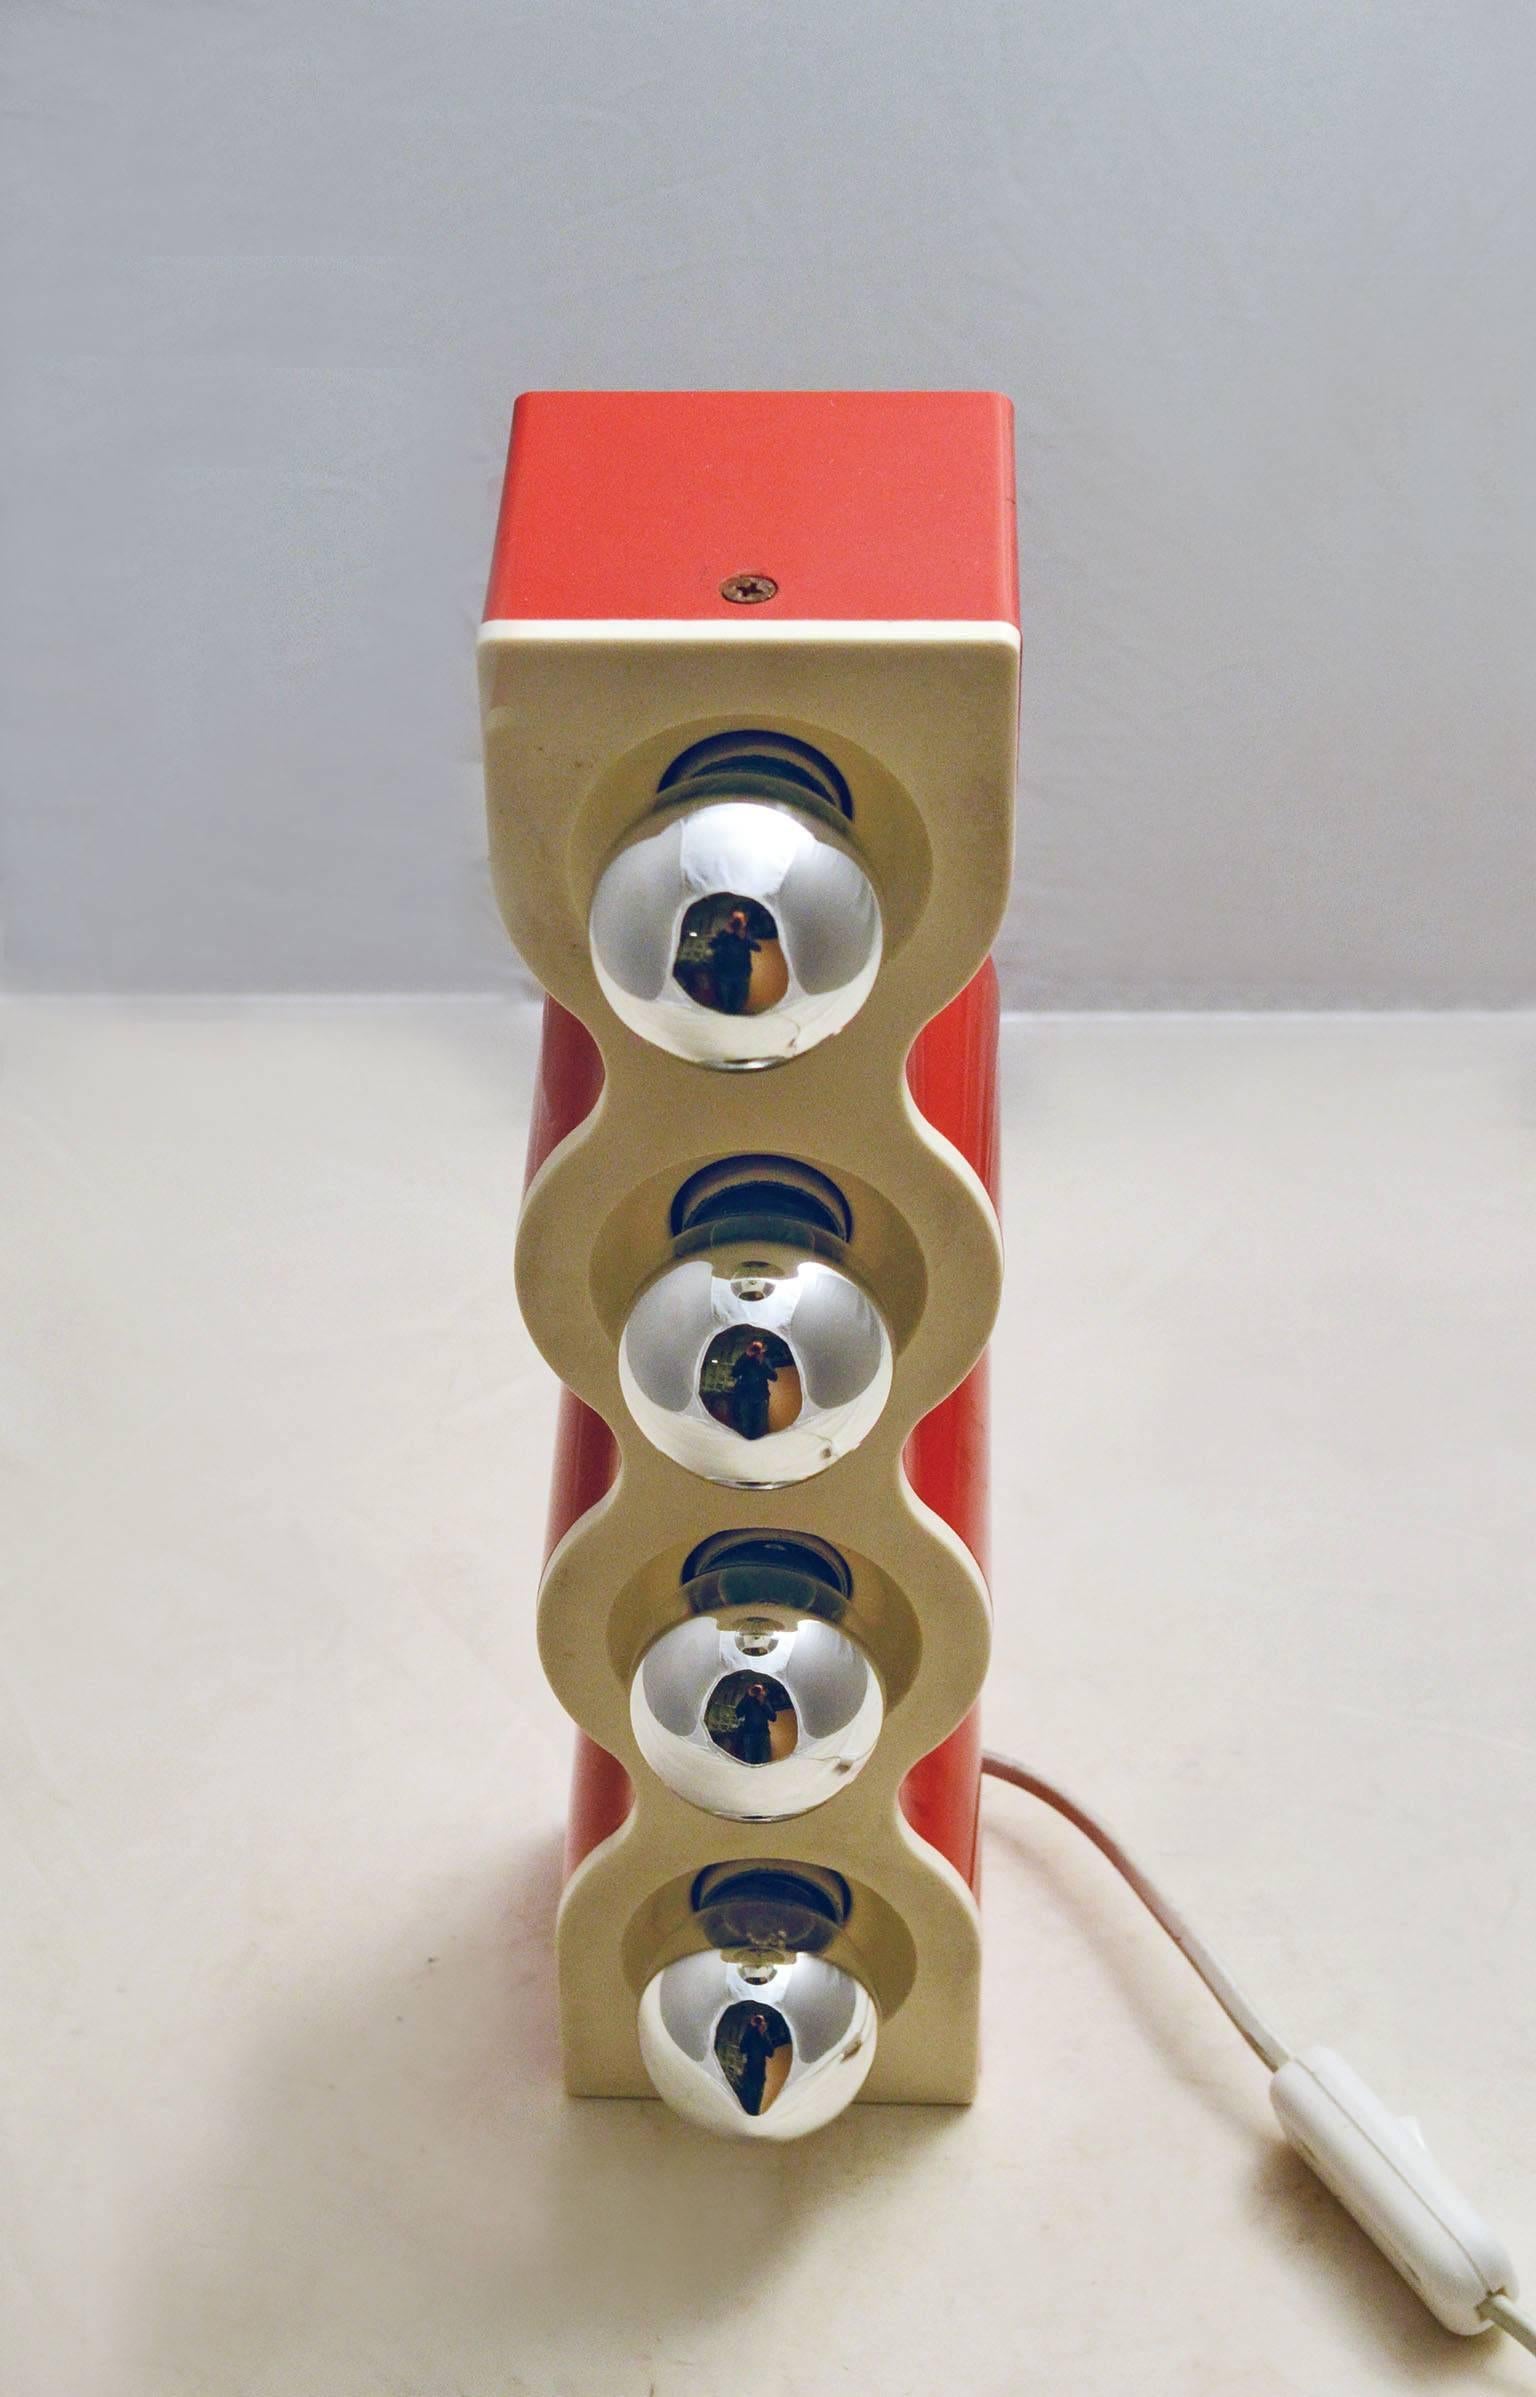 Molded Ettore Sottsass 'Sinus' Table Lamp for Stilnovo, 1972